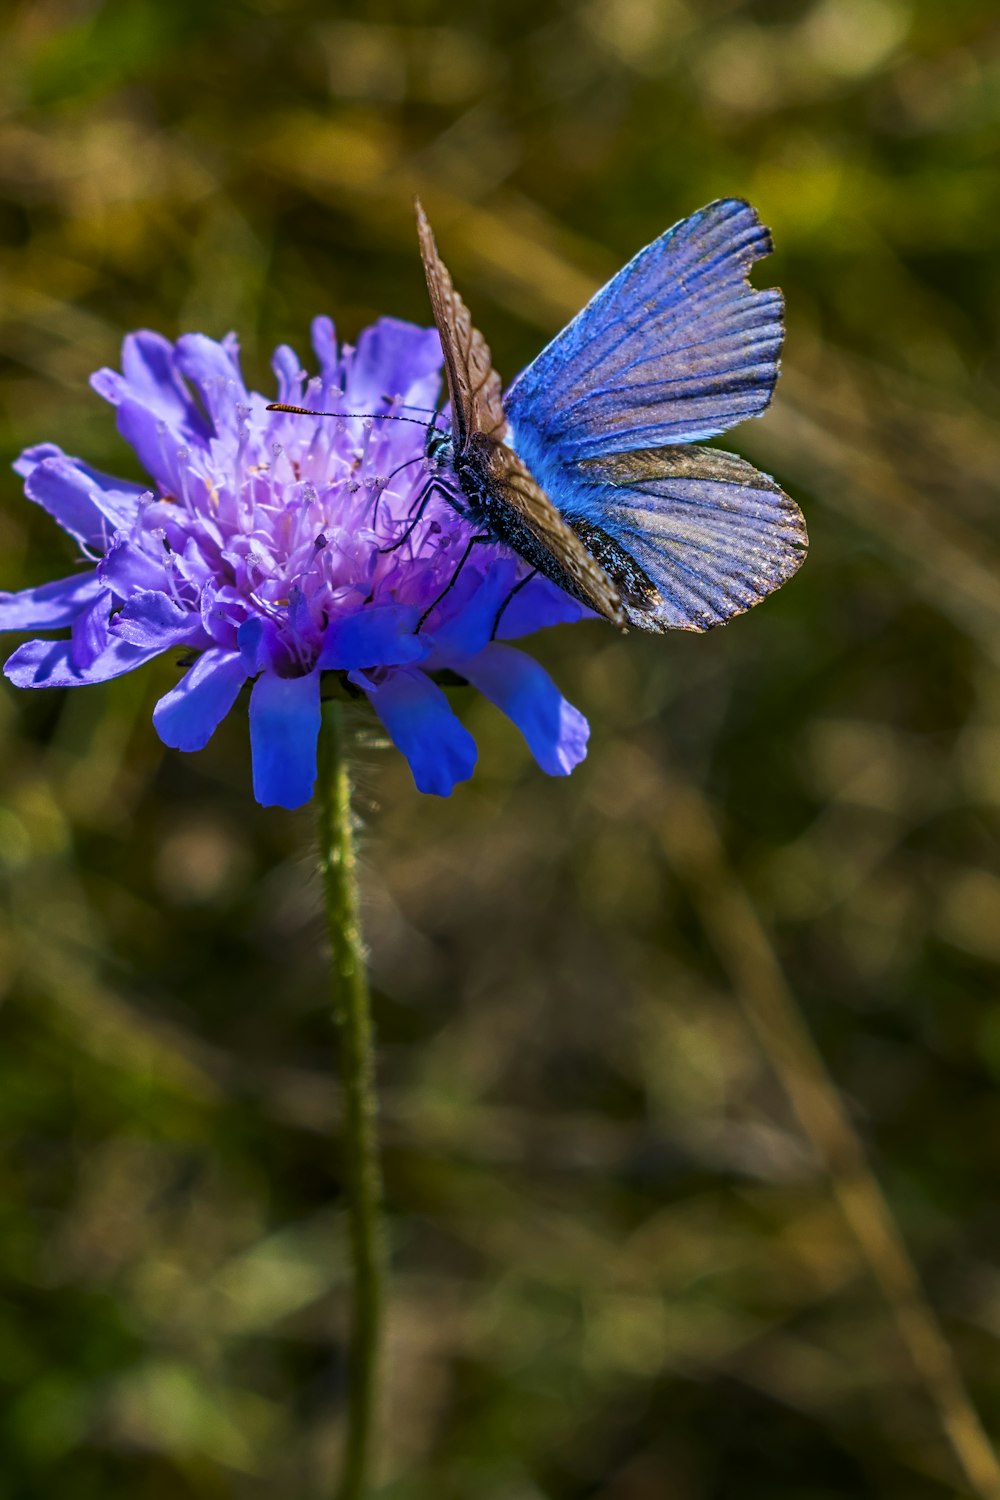 a blue butterfly sitting on a purple flower